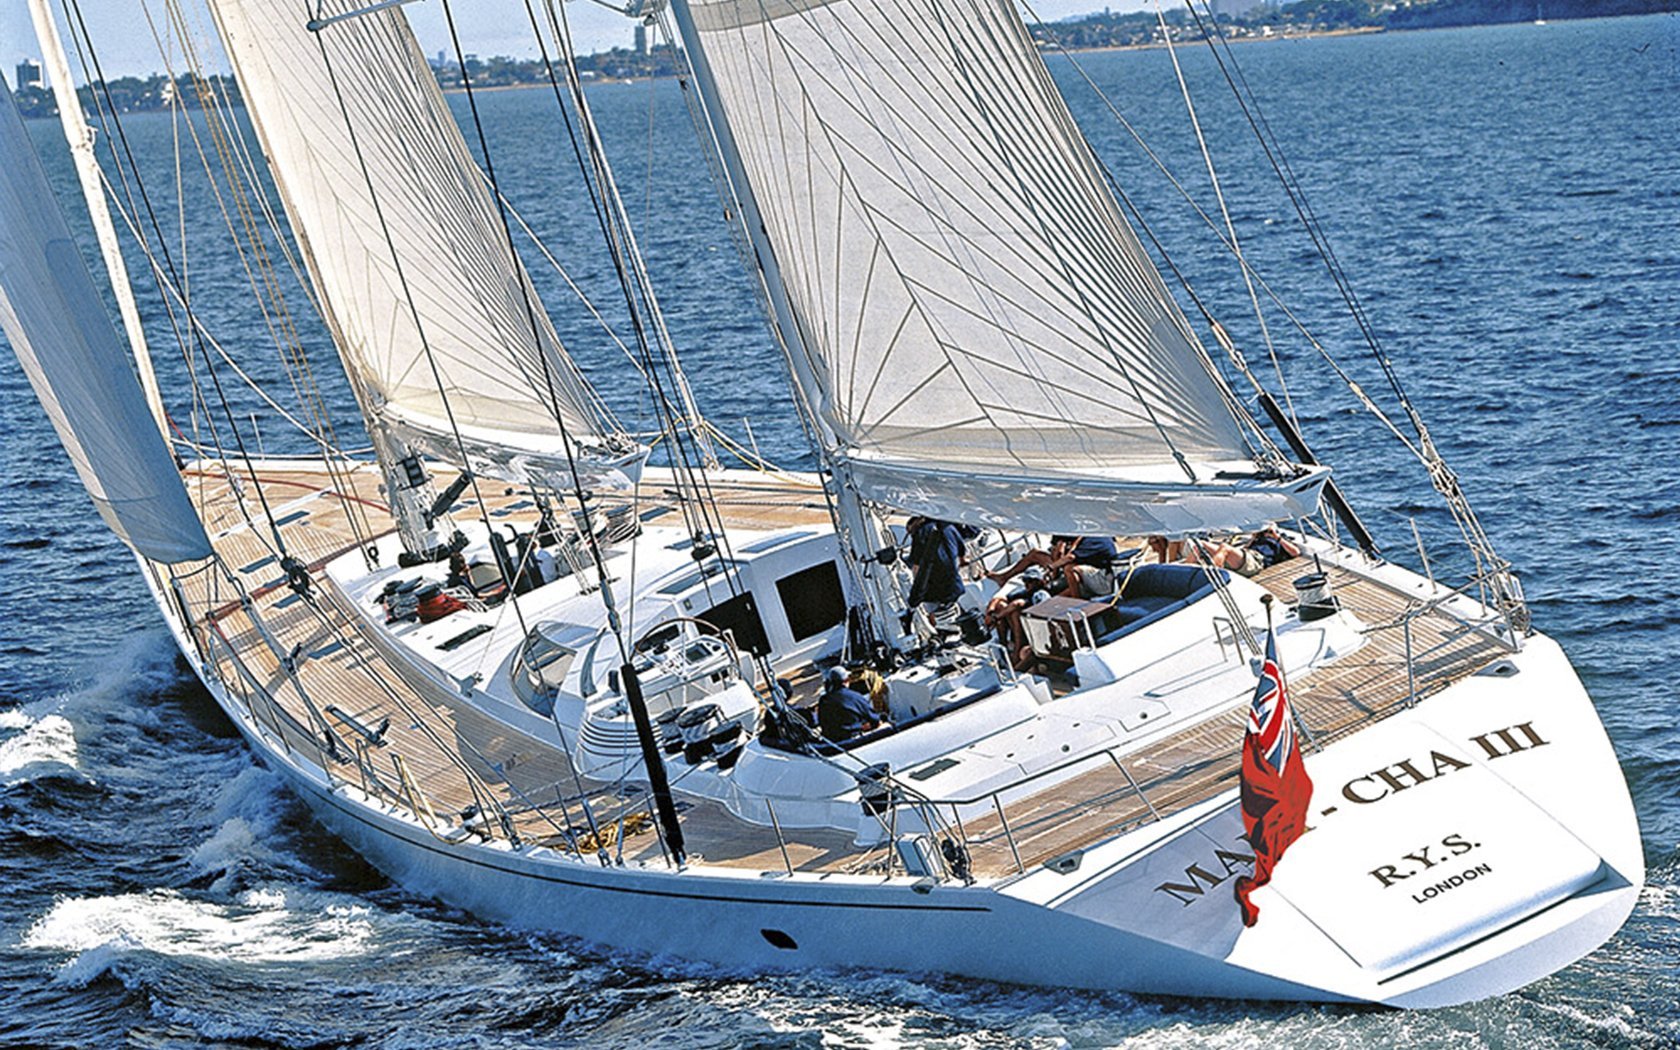 Mari Cha Yacht - Sensation Yachts - 1997 - à vendre - à louer